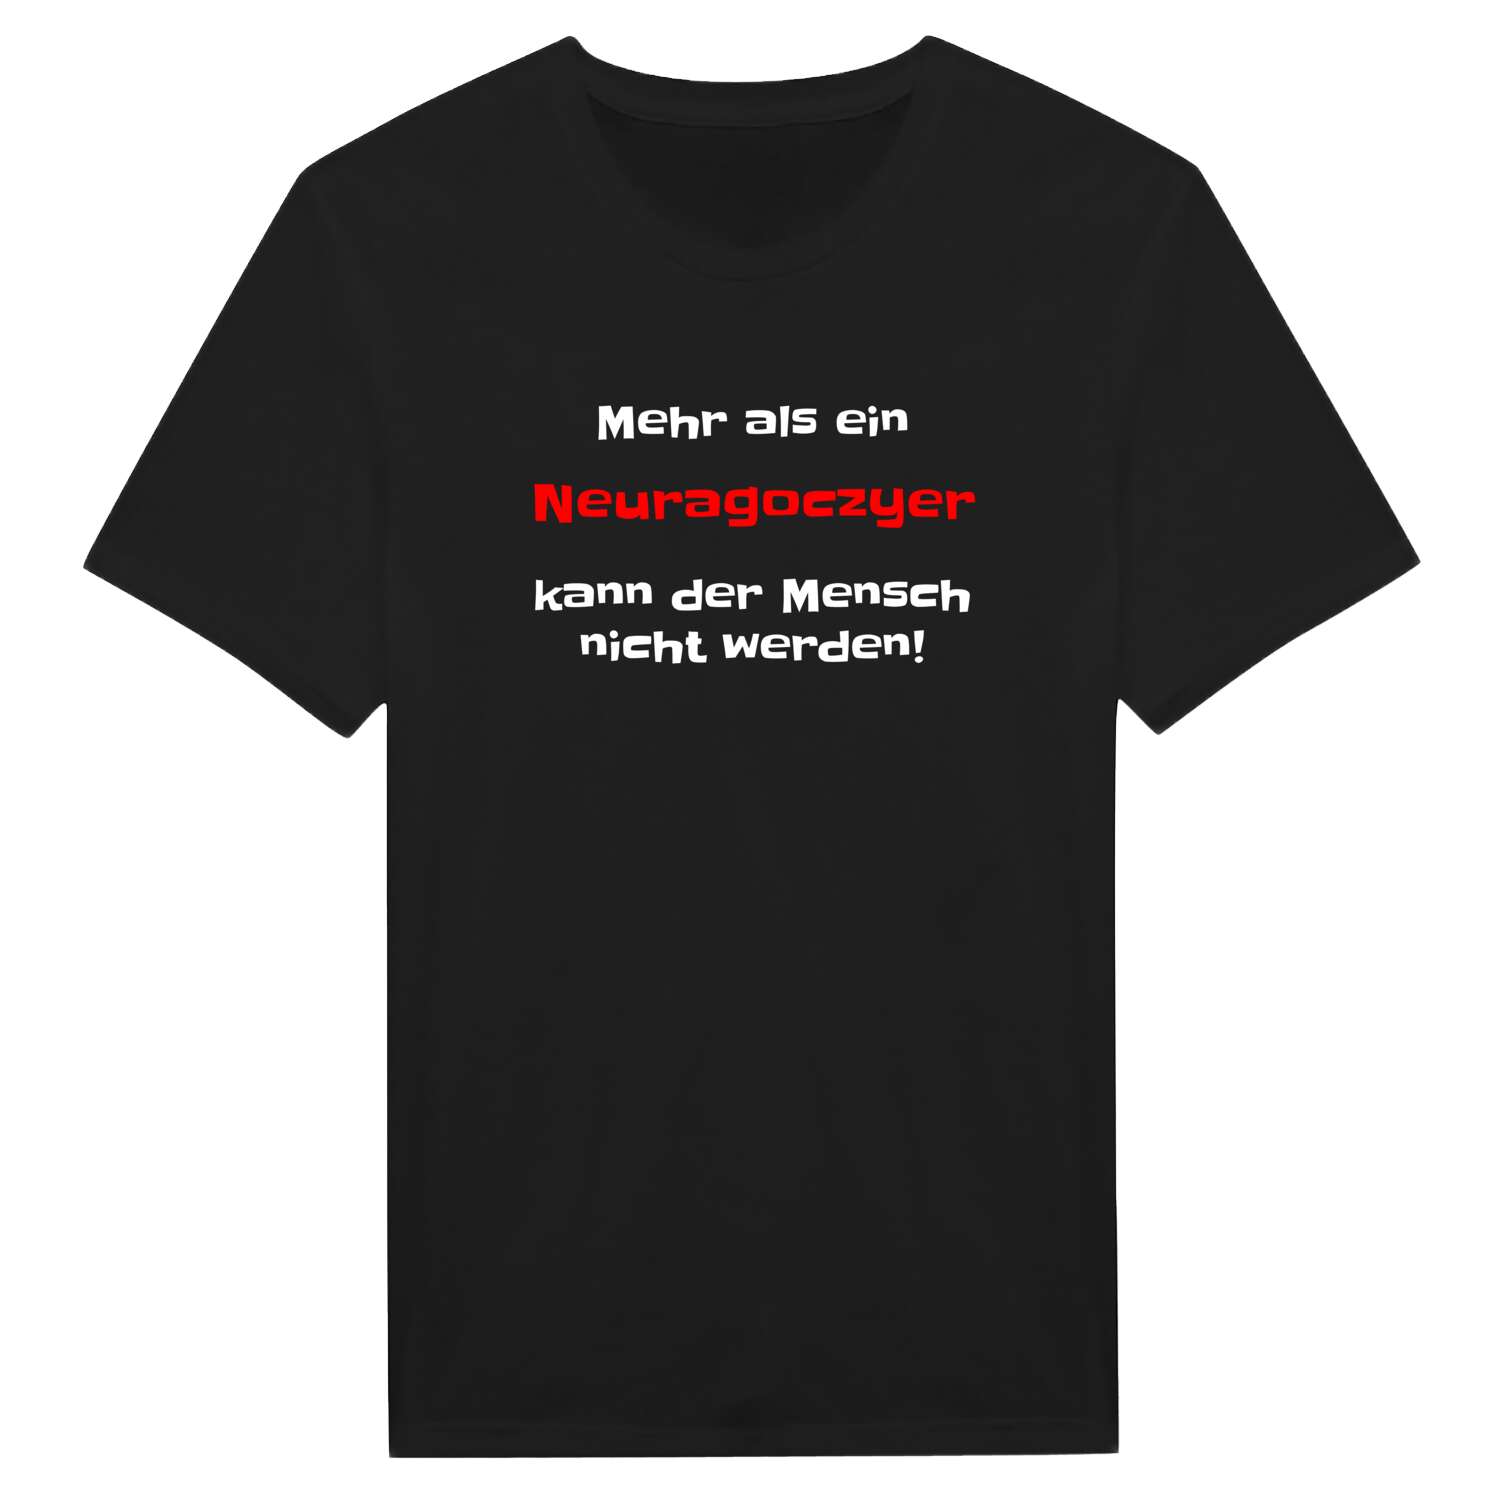 Neuragoczy T-Shirt »Mehr als ein«